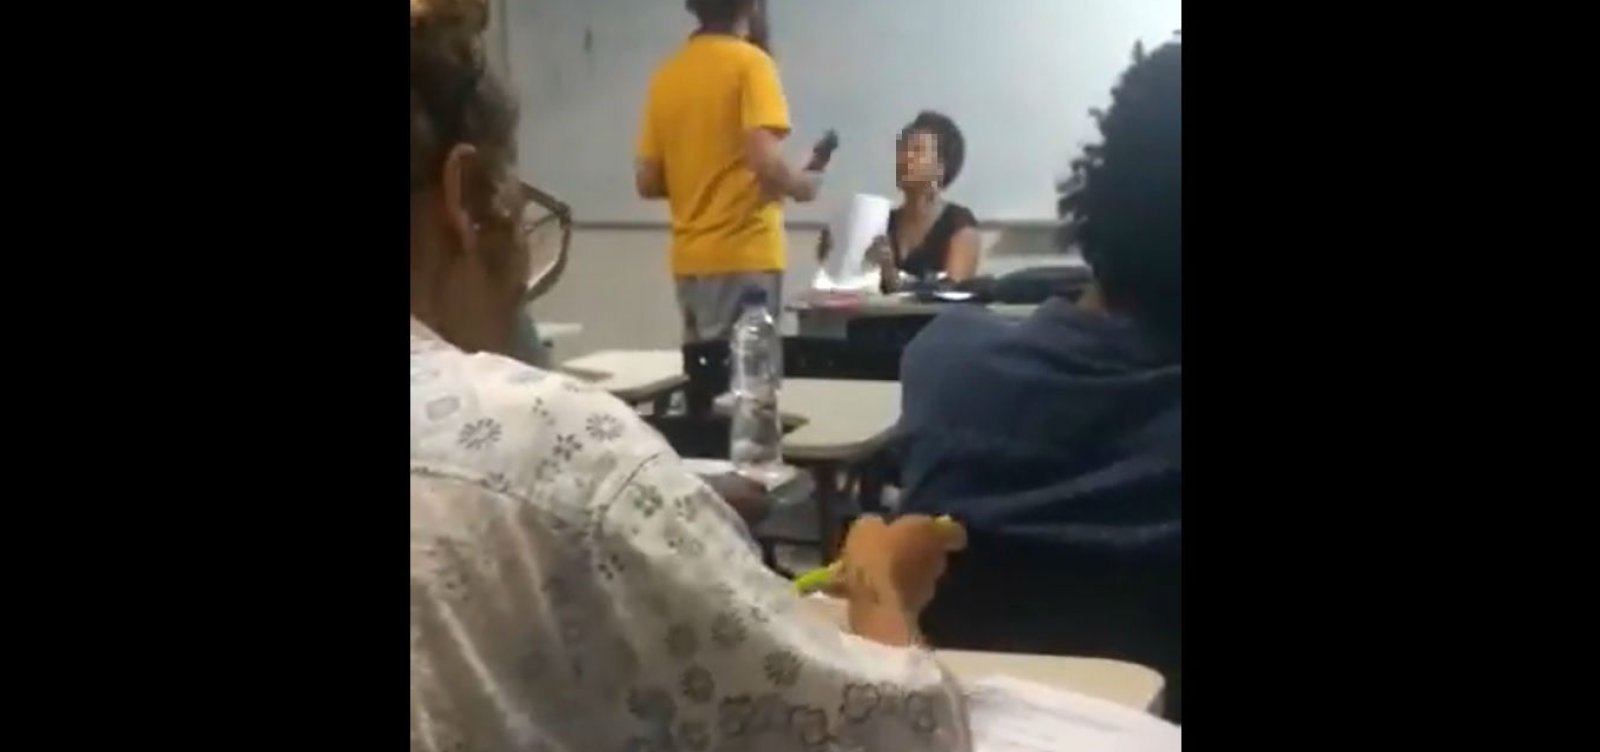 Coordenadora diz que foi solicitada expulsão de aluno após acusação de racismo na UFRB